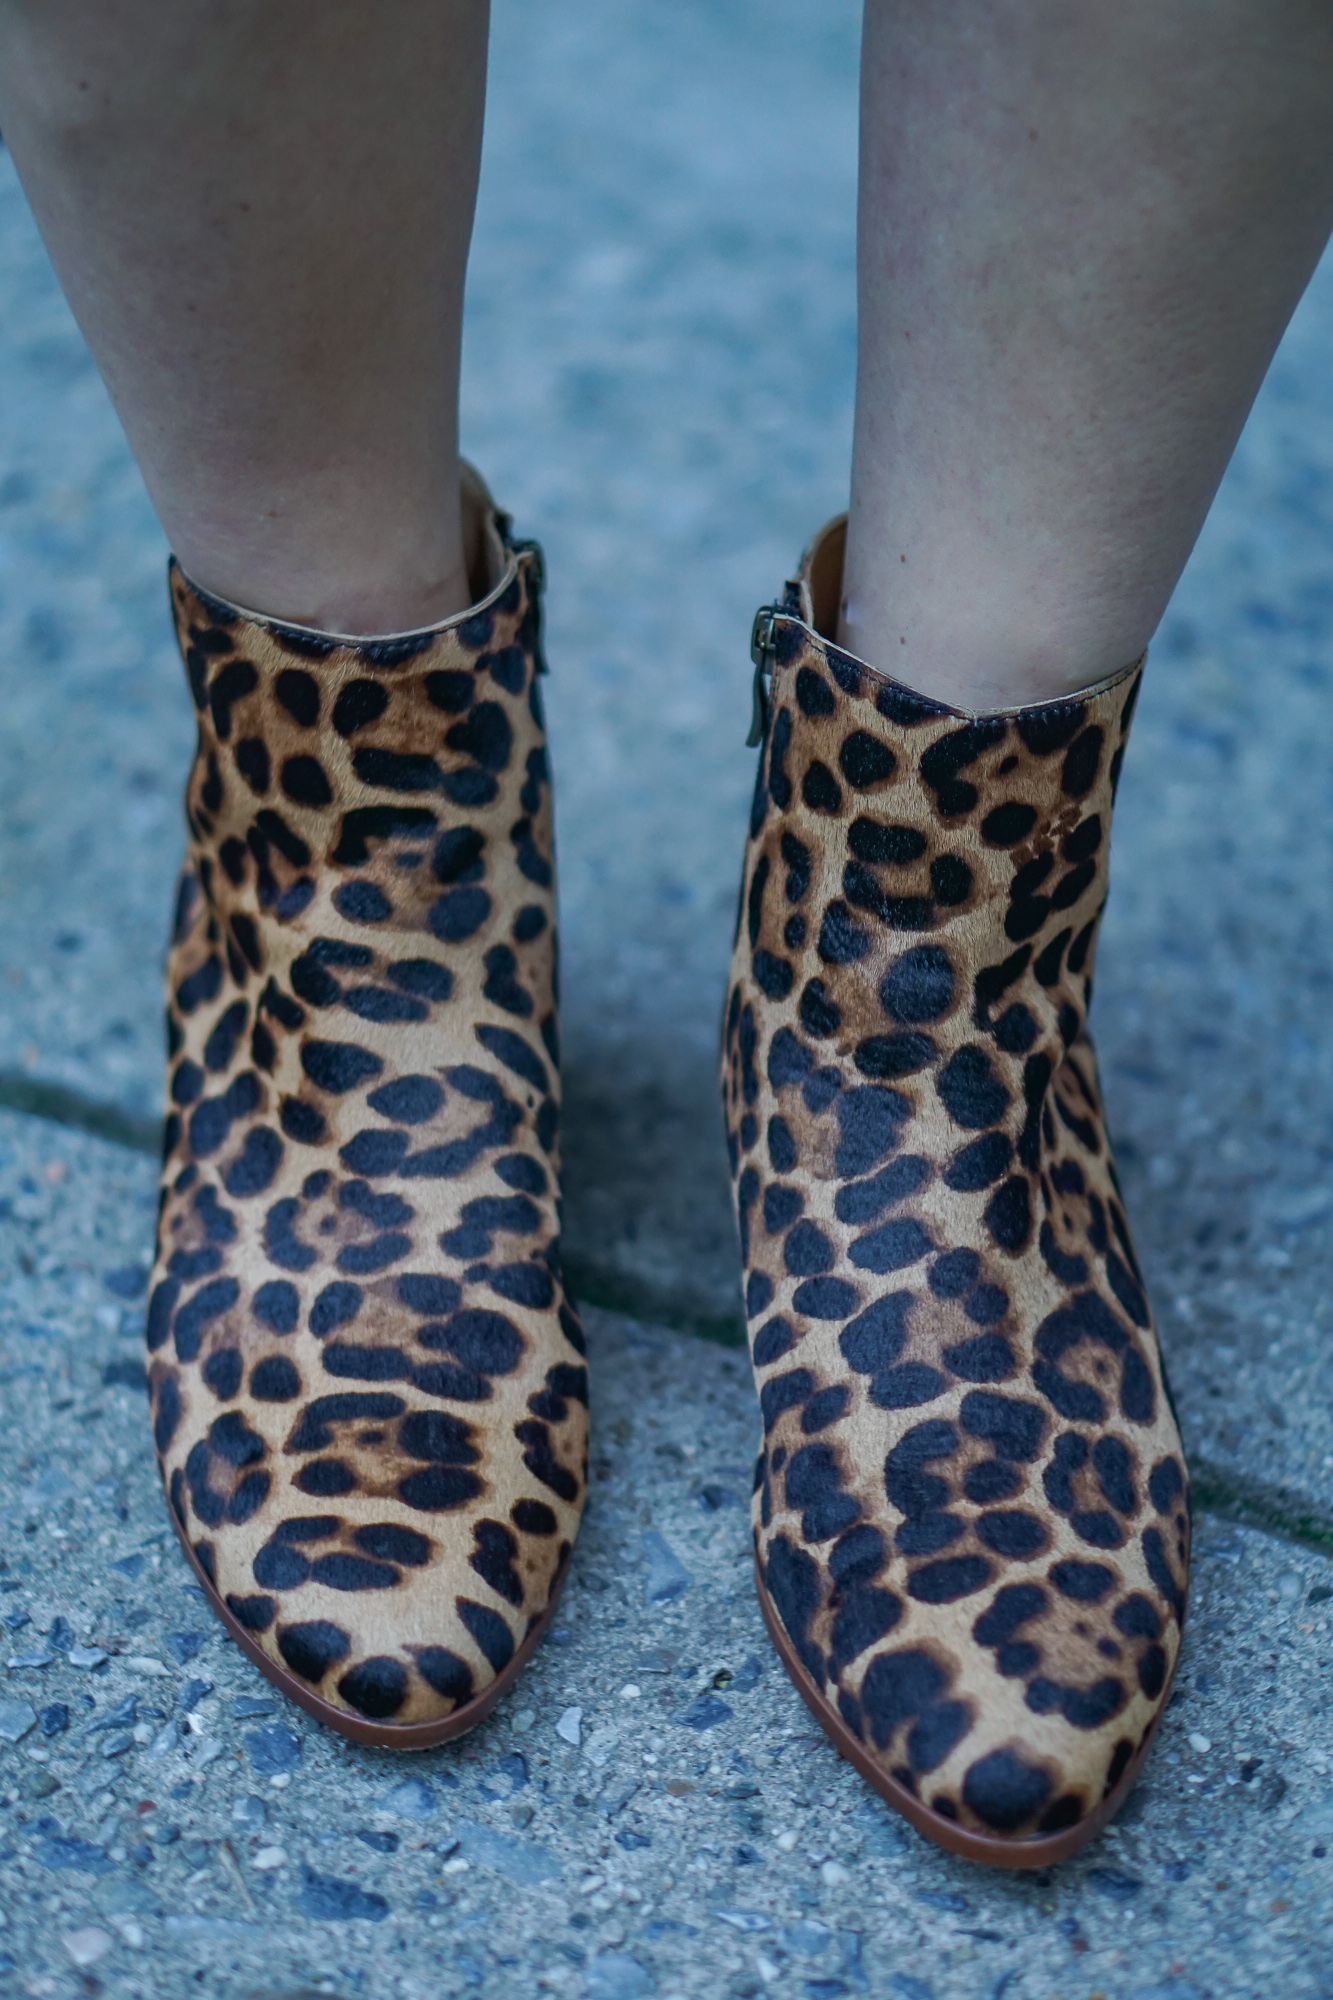 Leopard booties